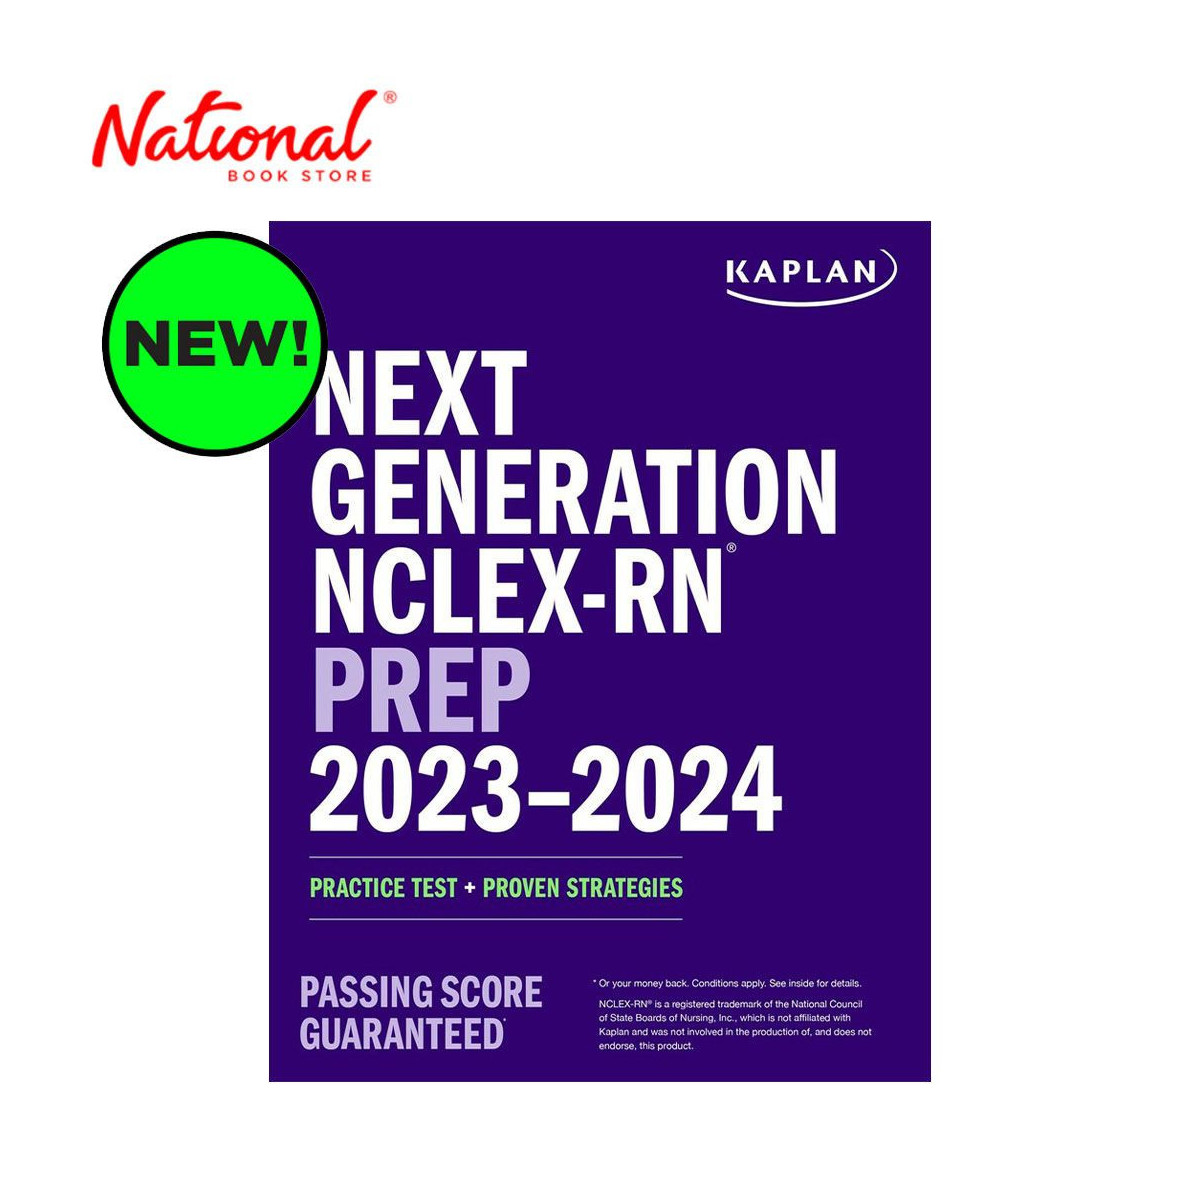 Next Generation NCLEX-RN Prep 2023-2024 by Kaplan Nursing - Trade Paperback - Reviewer